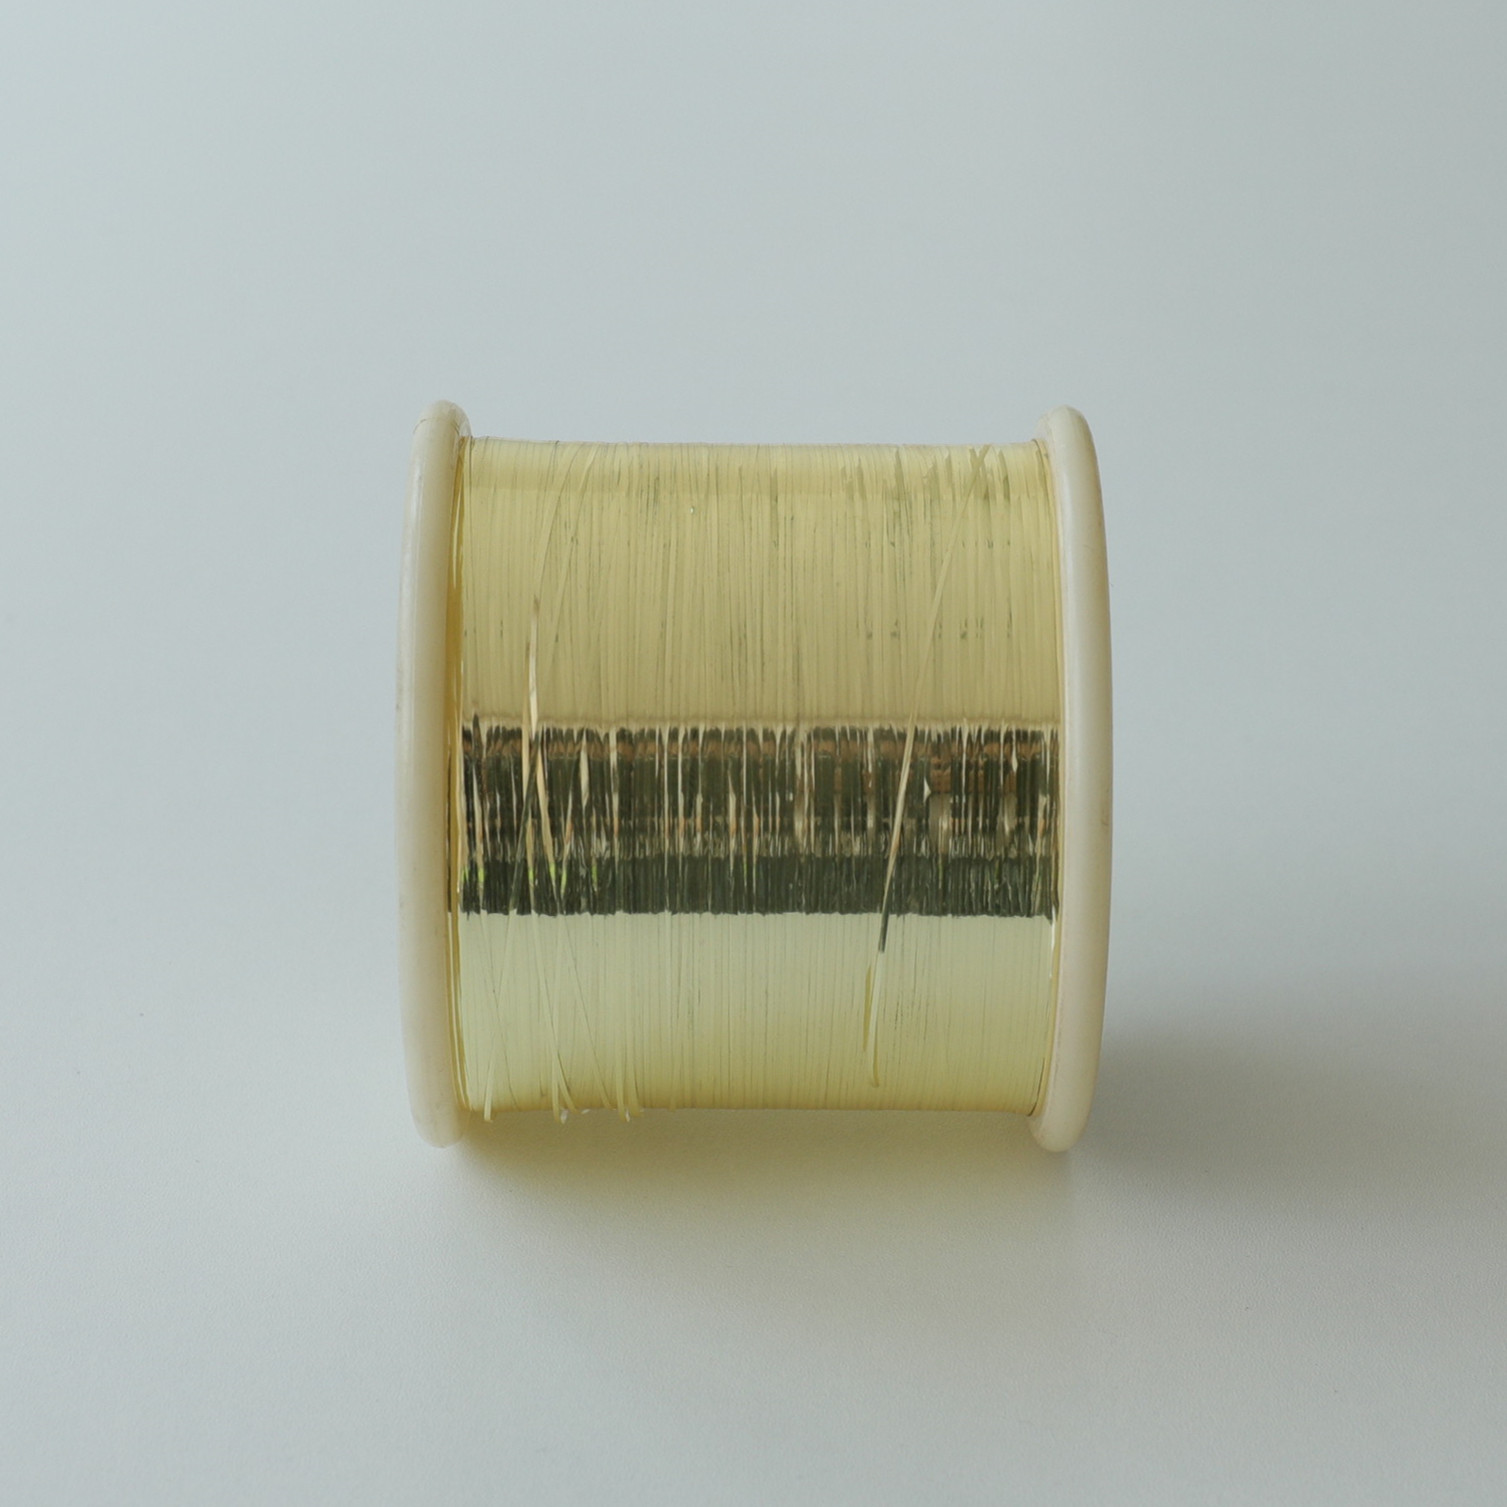 170 grammes de fil plat de type M fil métallique couleur or pur